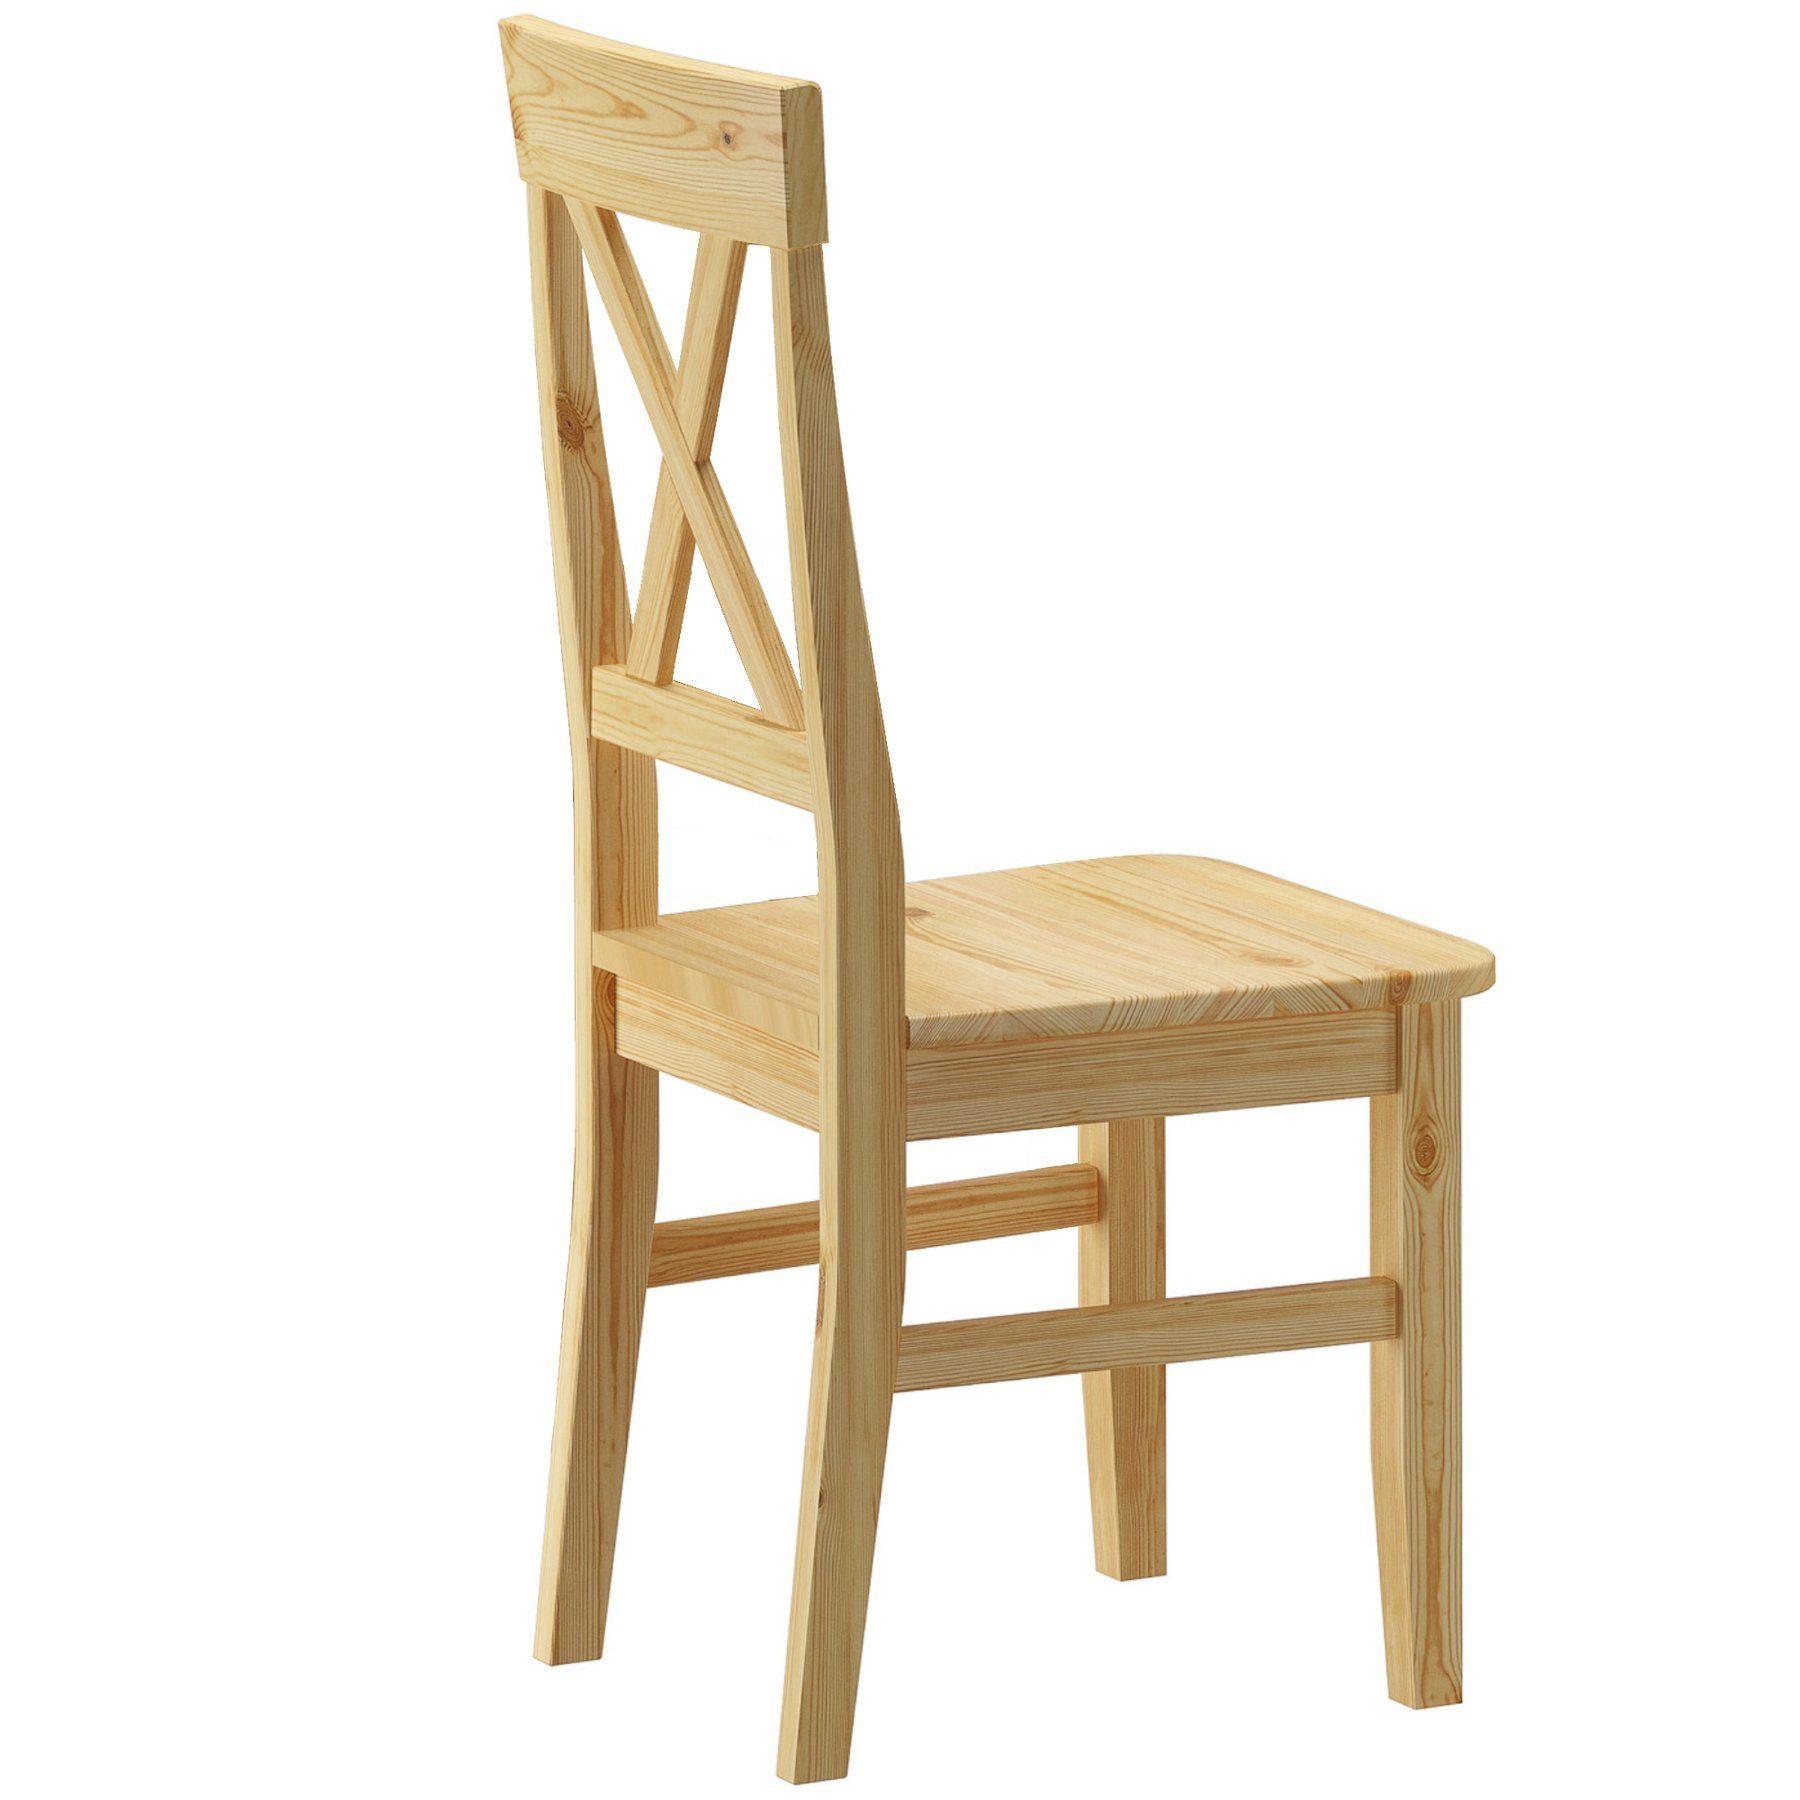 und Kiefer Essgruppe Tisch Massivholz mit Vollholzmöbel ERST-HOLZ 4 Stühle itzgarnitur